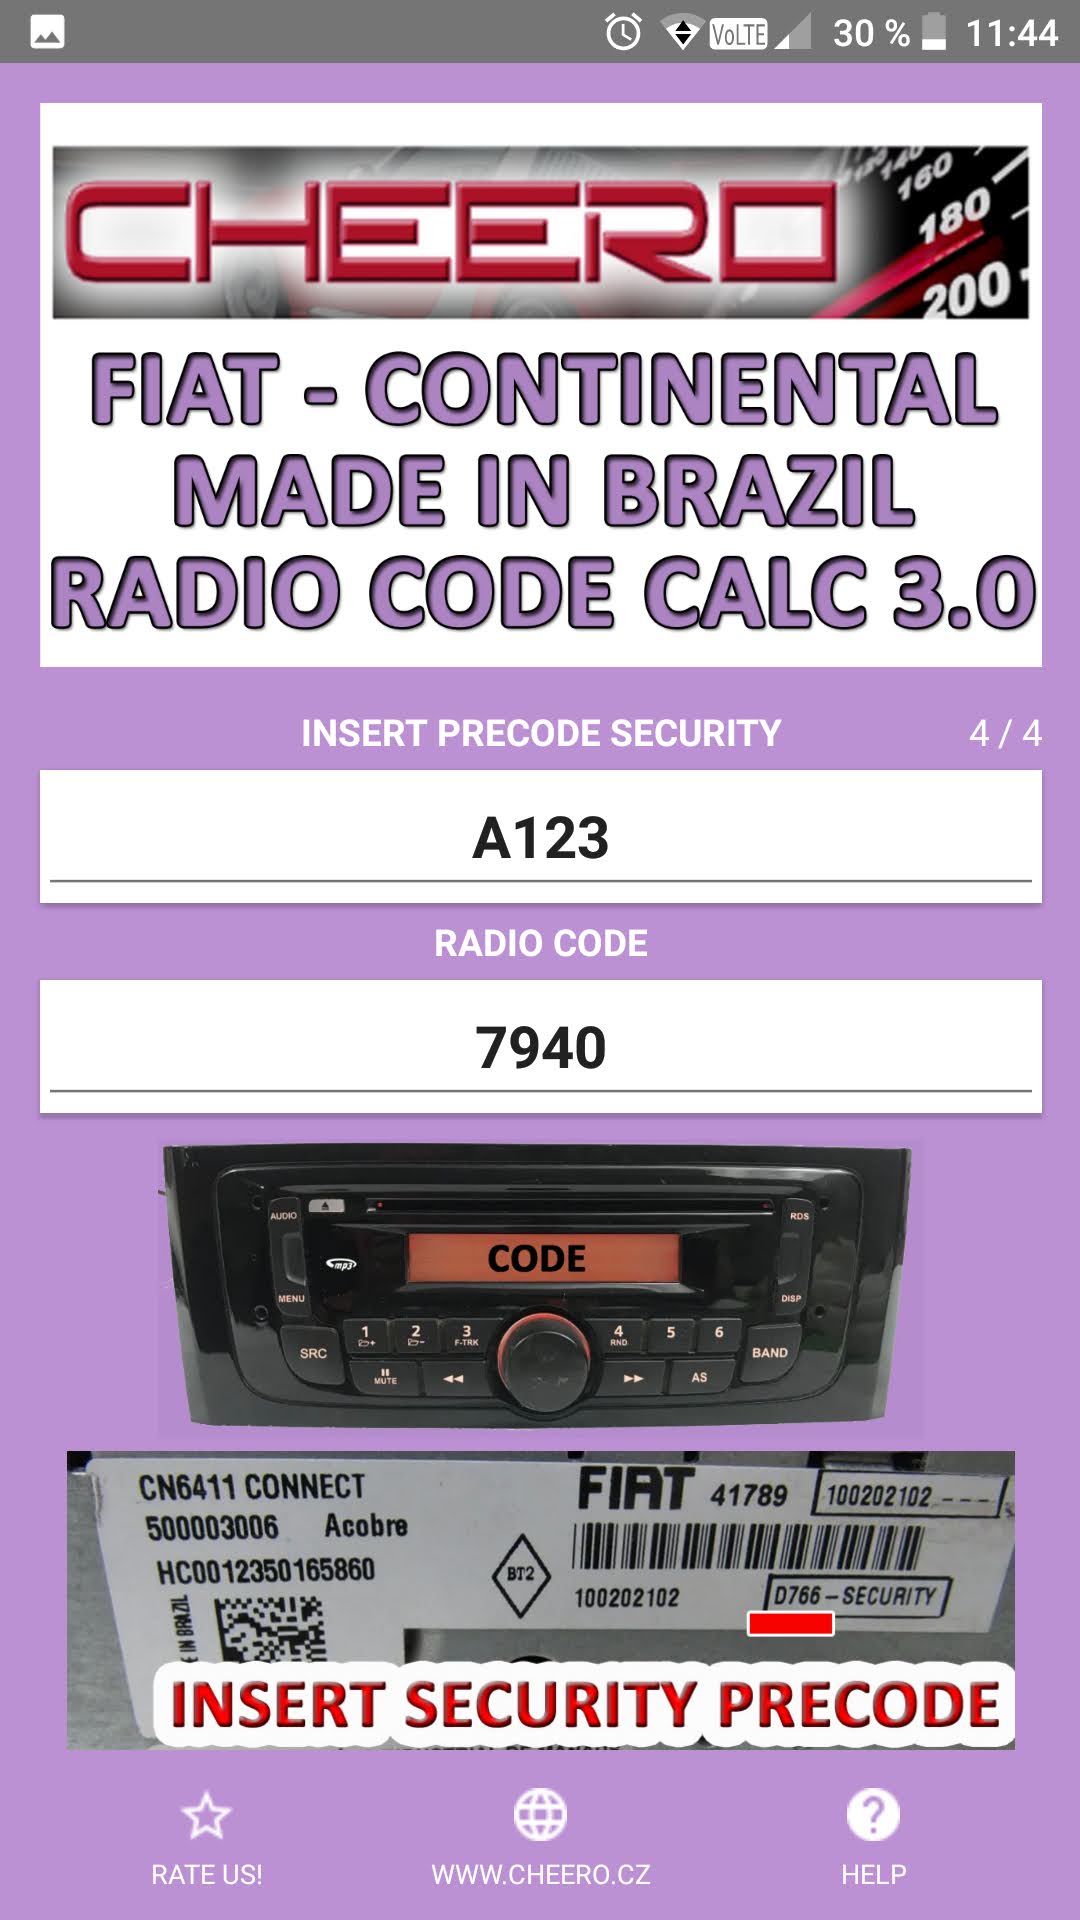 FIAT CONTINENTAL BRAZIL RADIO CODE CALC